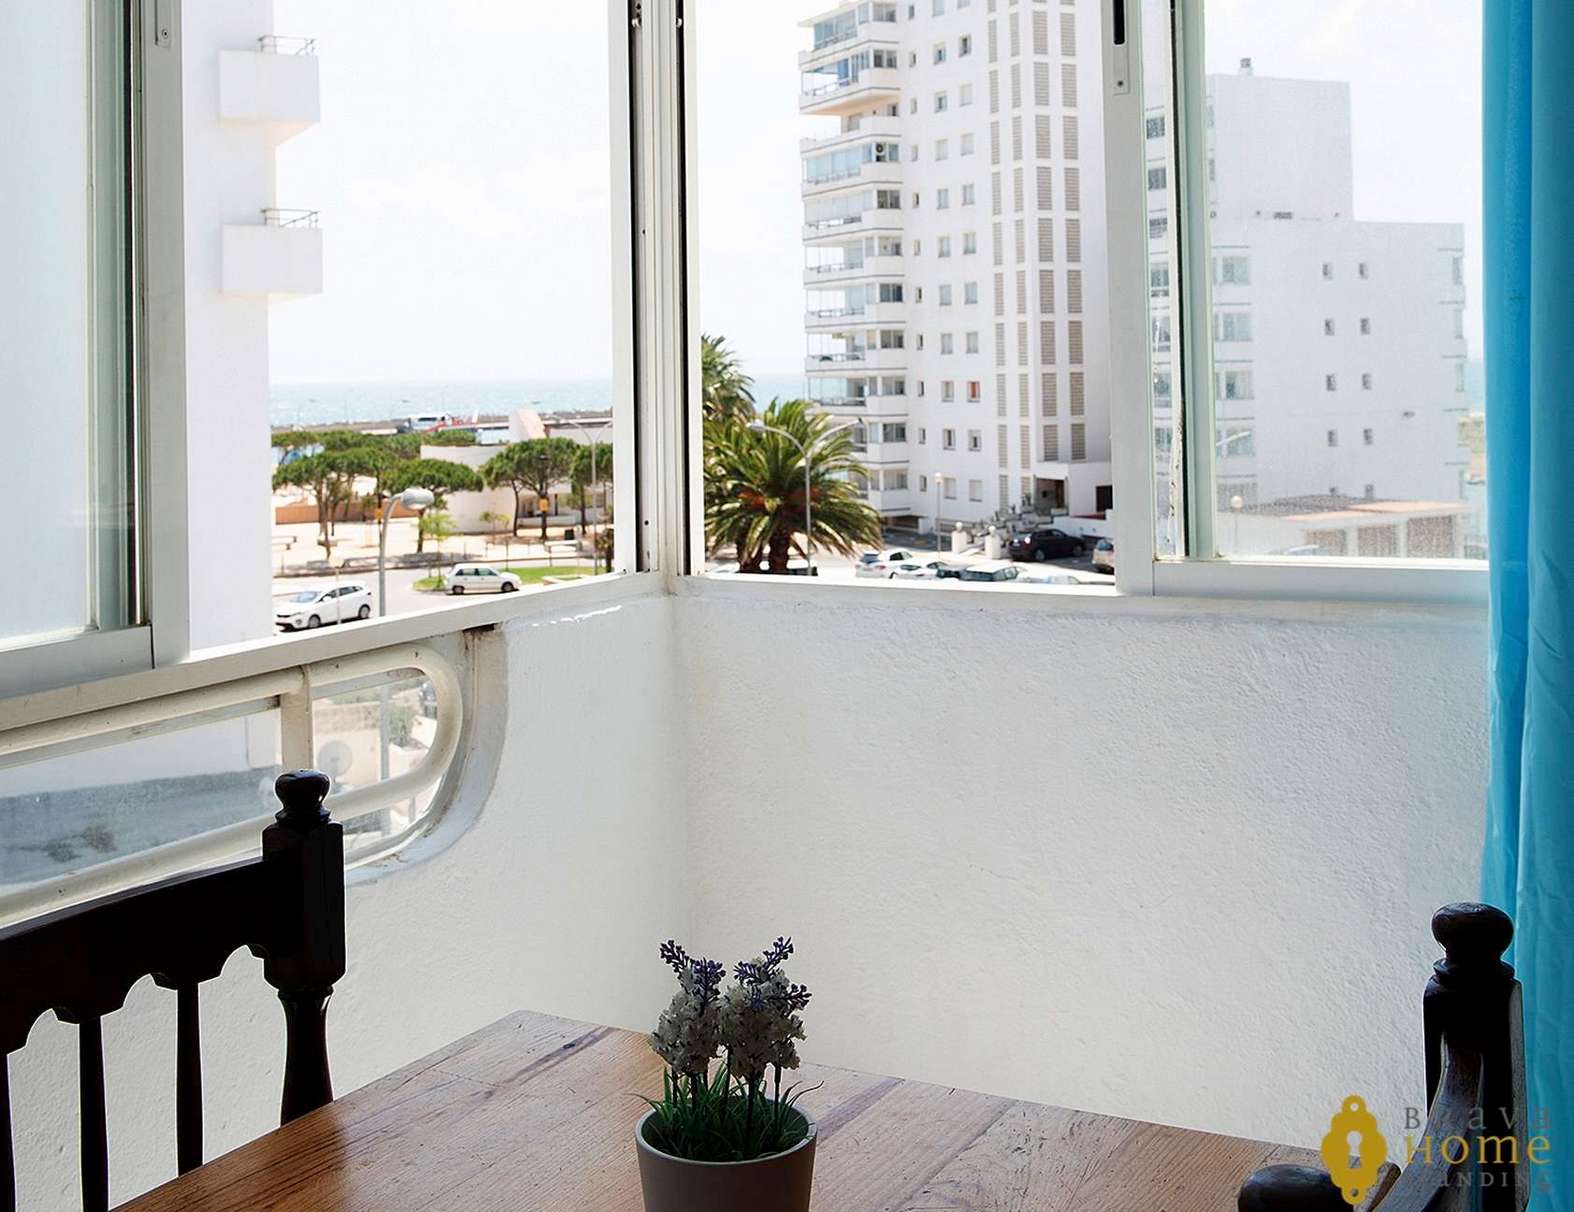 Beautiful apartment with sea view, for sale in Rosas - Santa Margarita